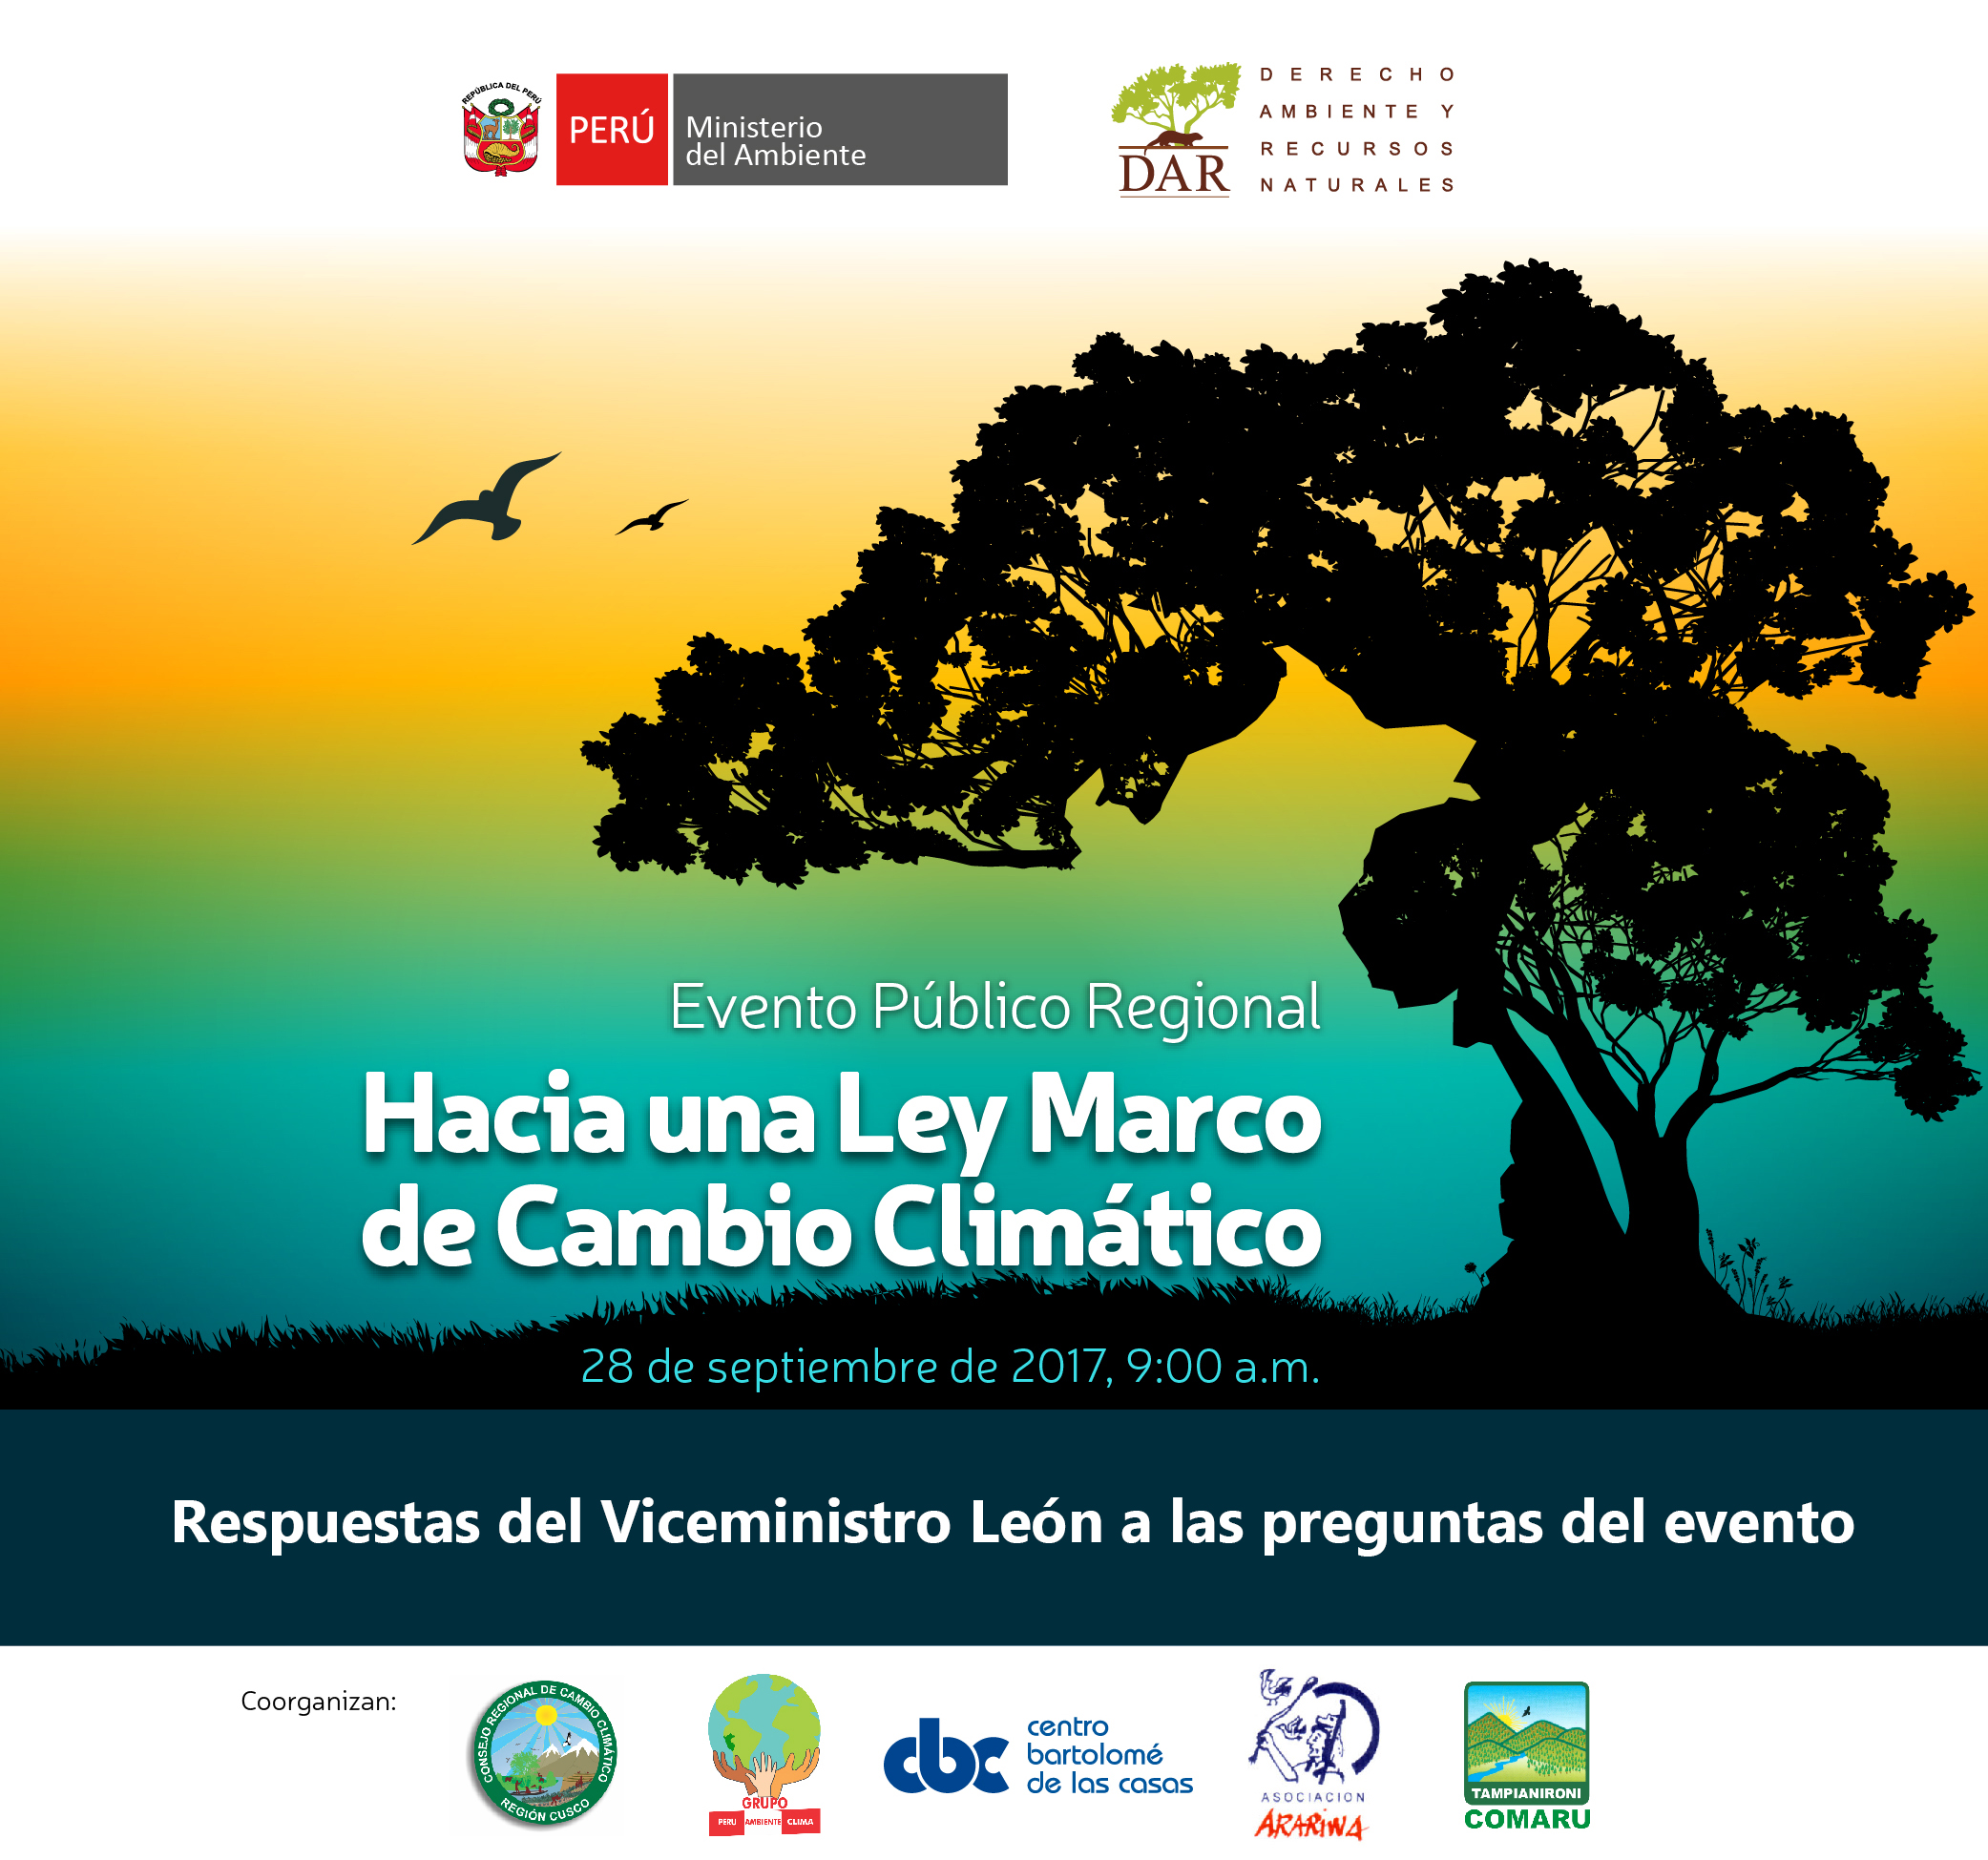 Respuestas del Viceministro León (MINAM) en Cusco sobre la Ley Marco de Cambio Climático